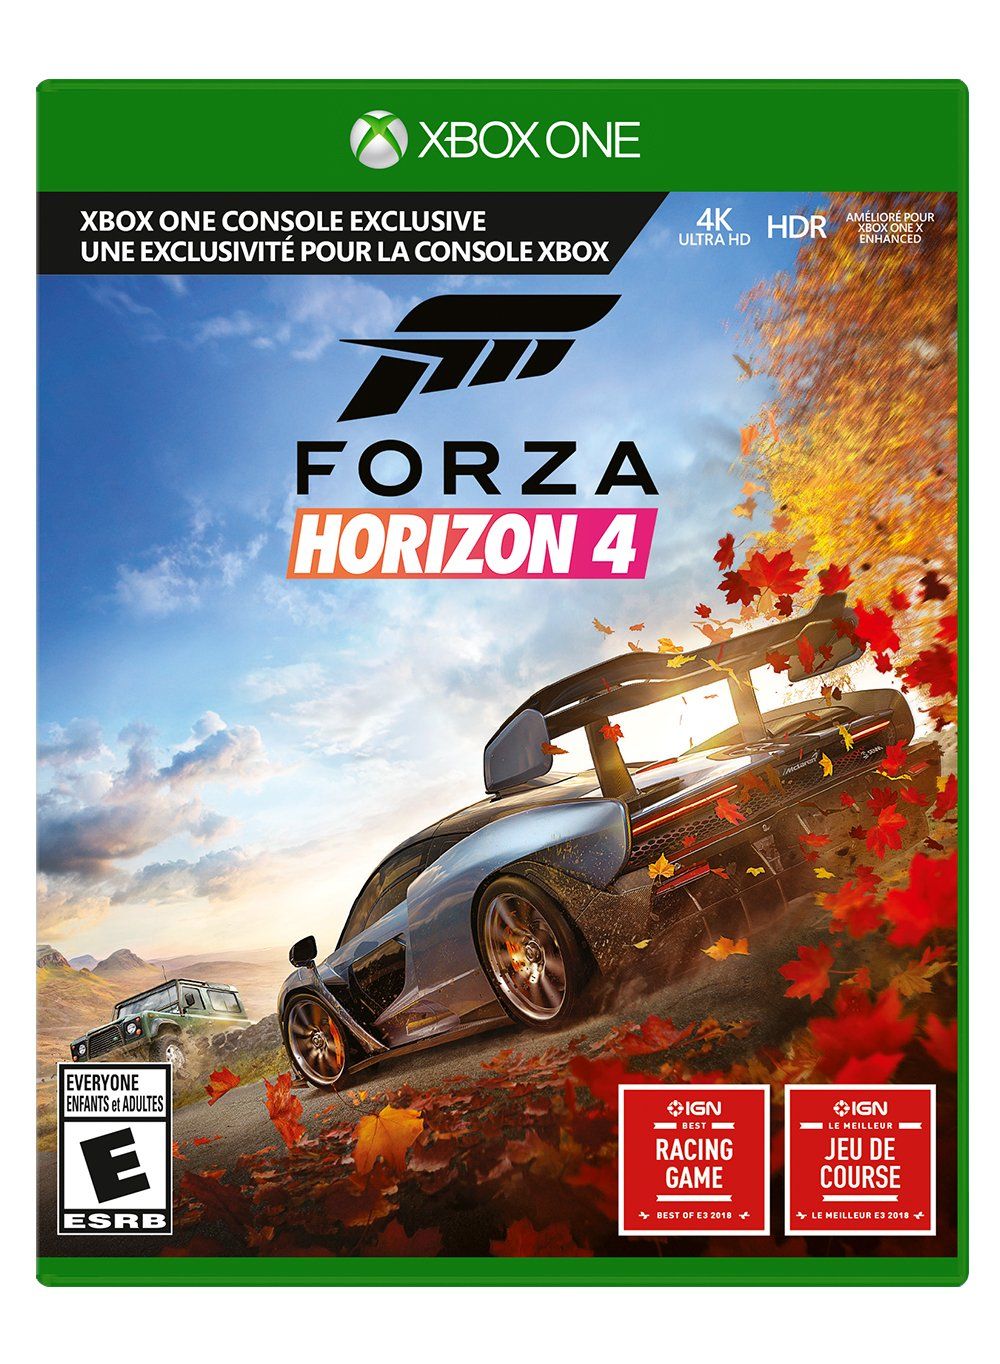 Mooch reccomend Forza 4 fun